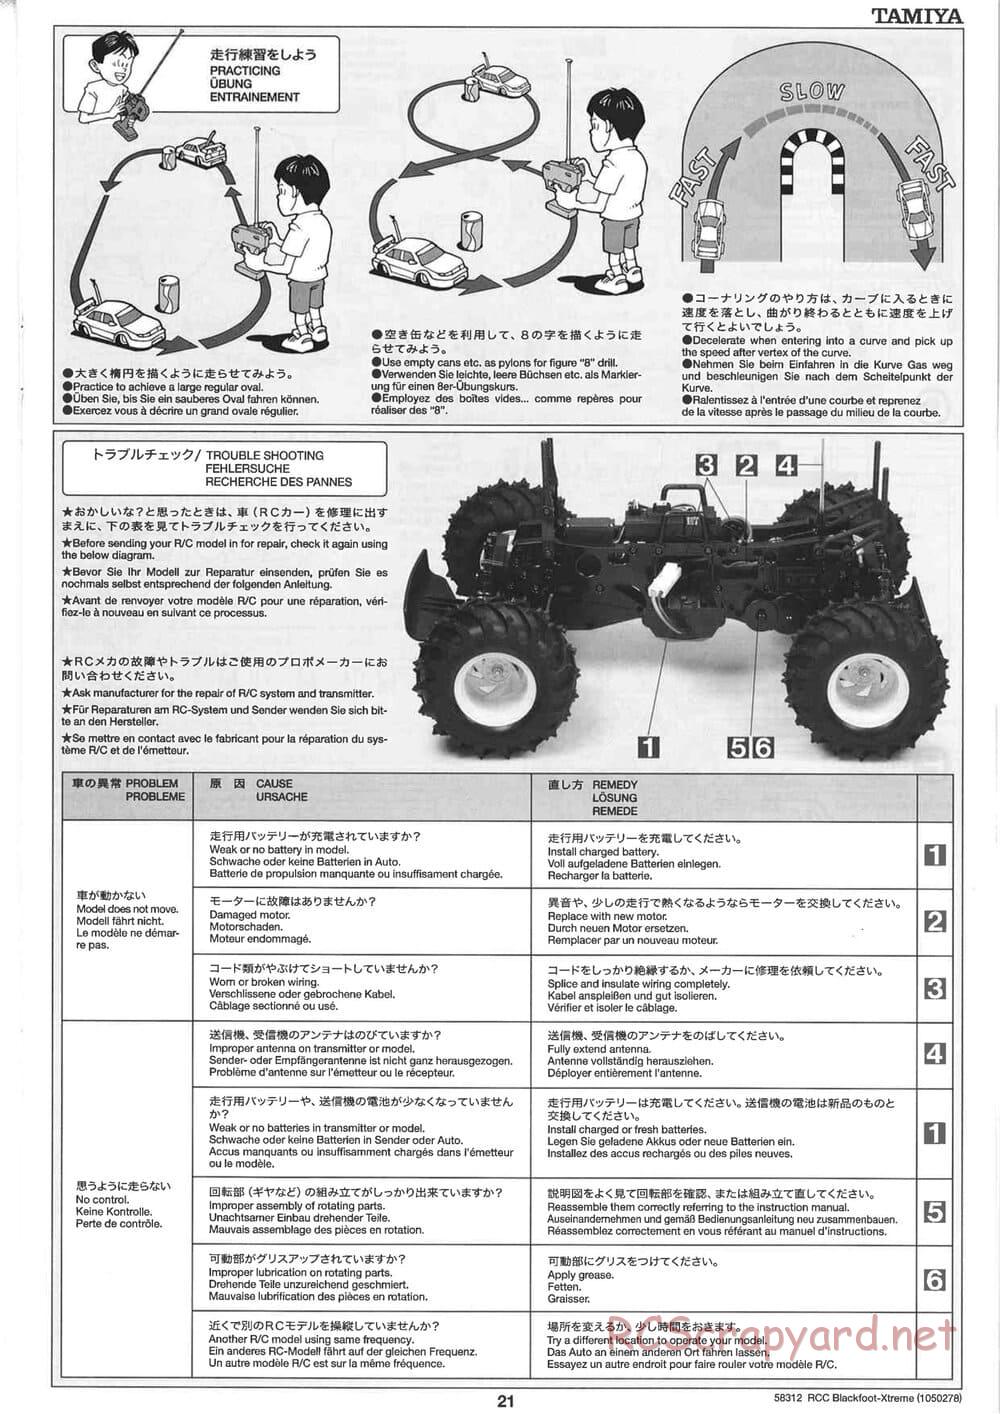 Tamiya - Blackfoot Xtreme - WT-01 Chassis - Manual - Page 21